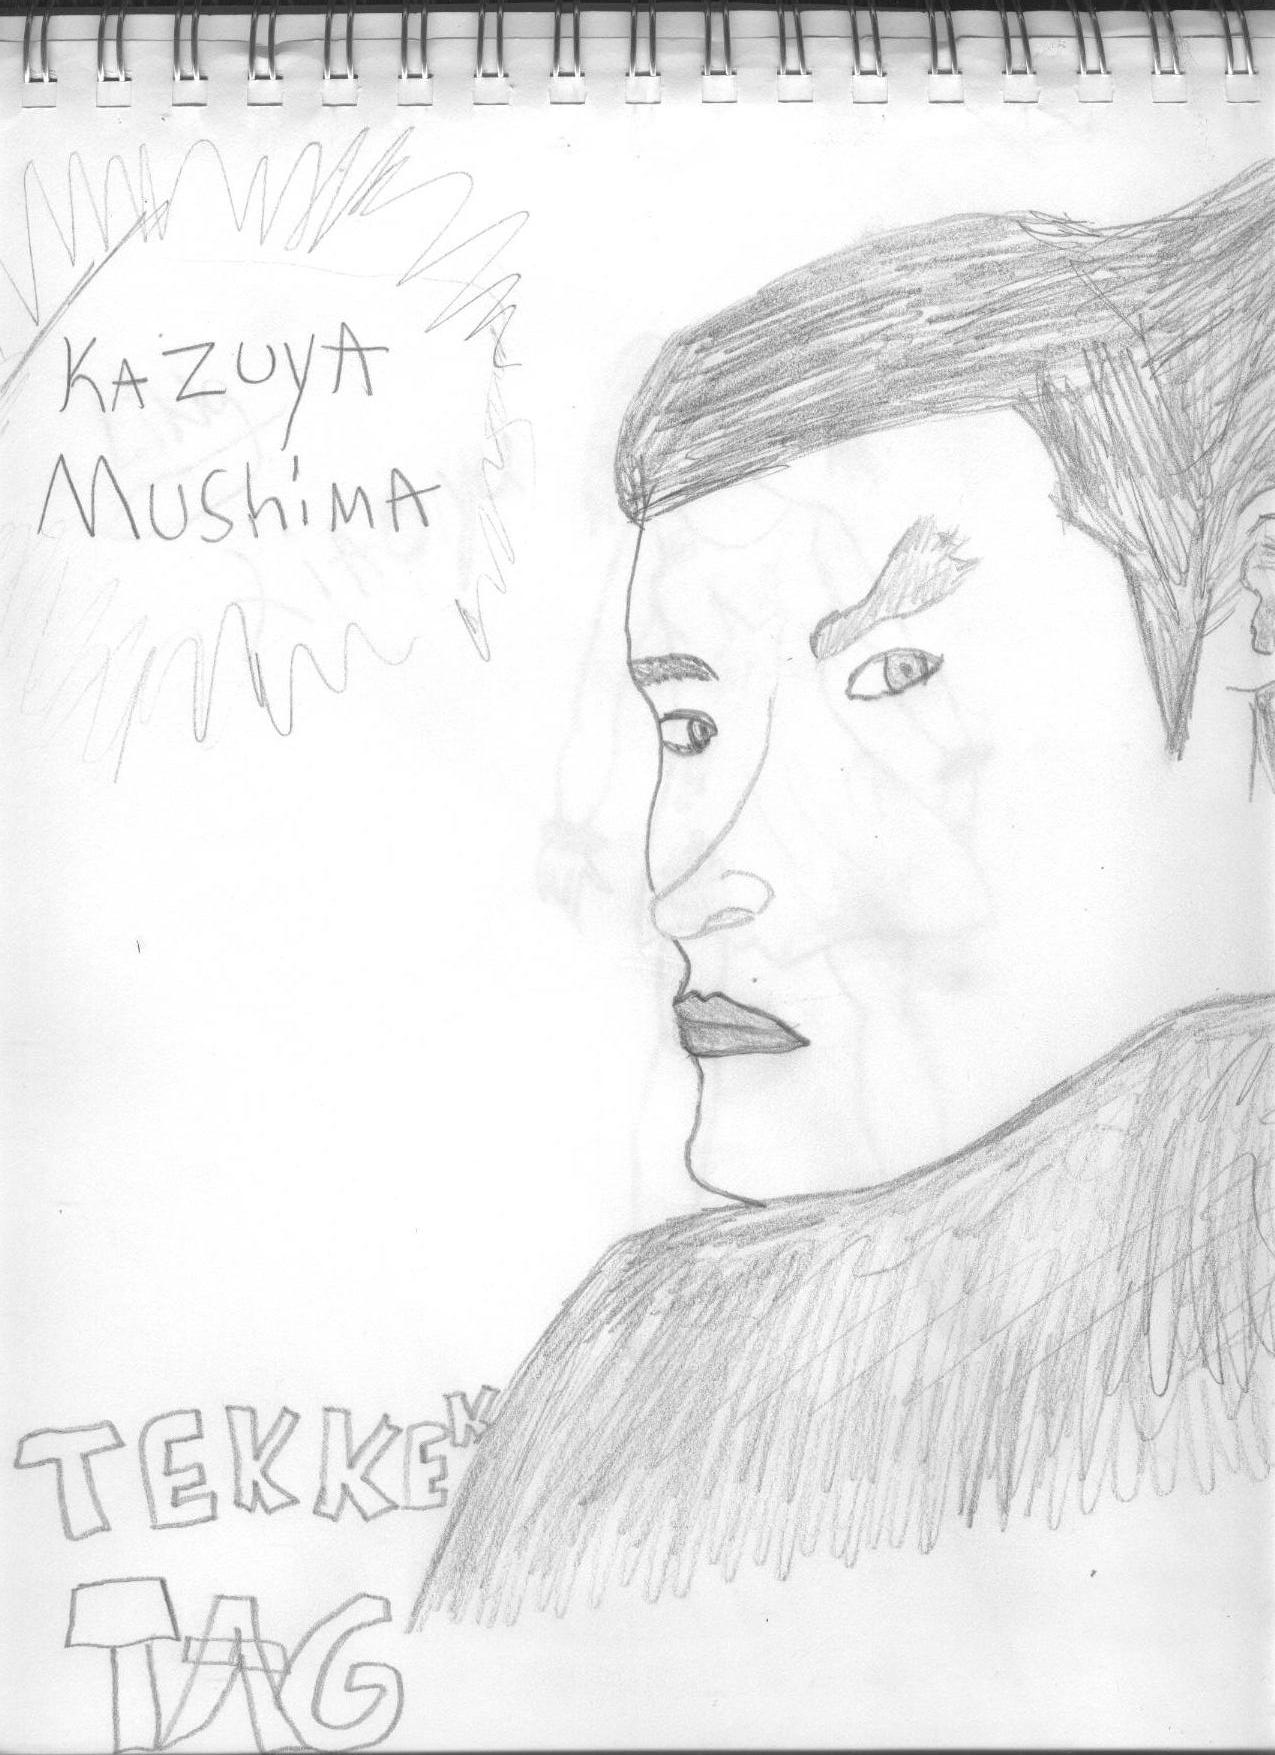 kazuya mushima by inuyasha_fan2